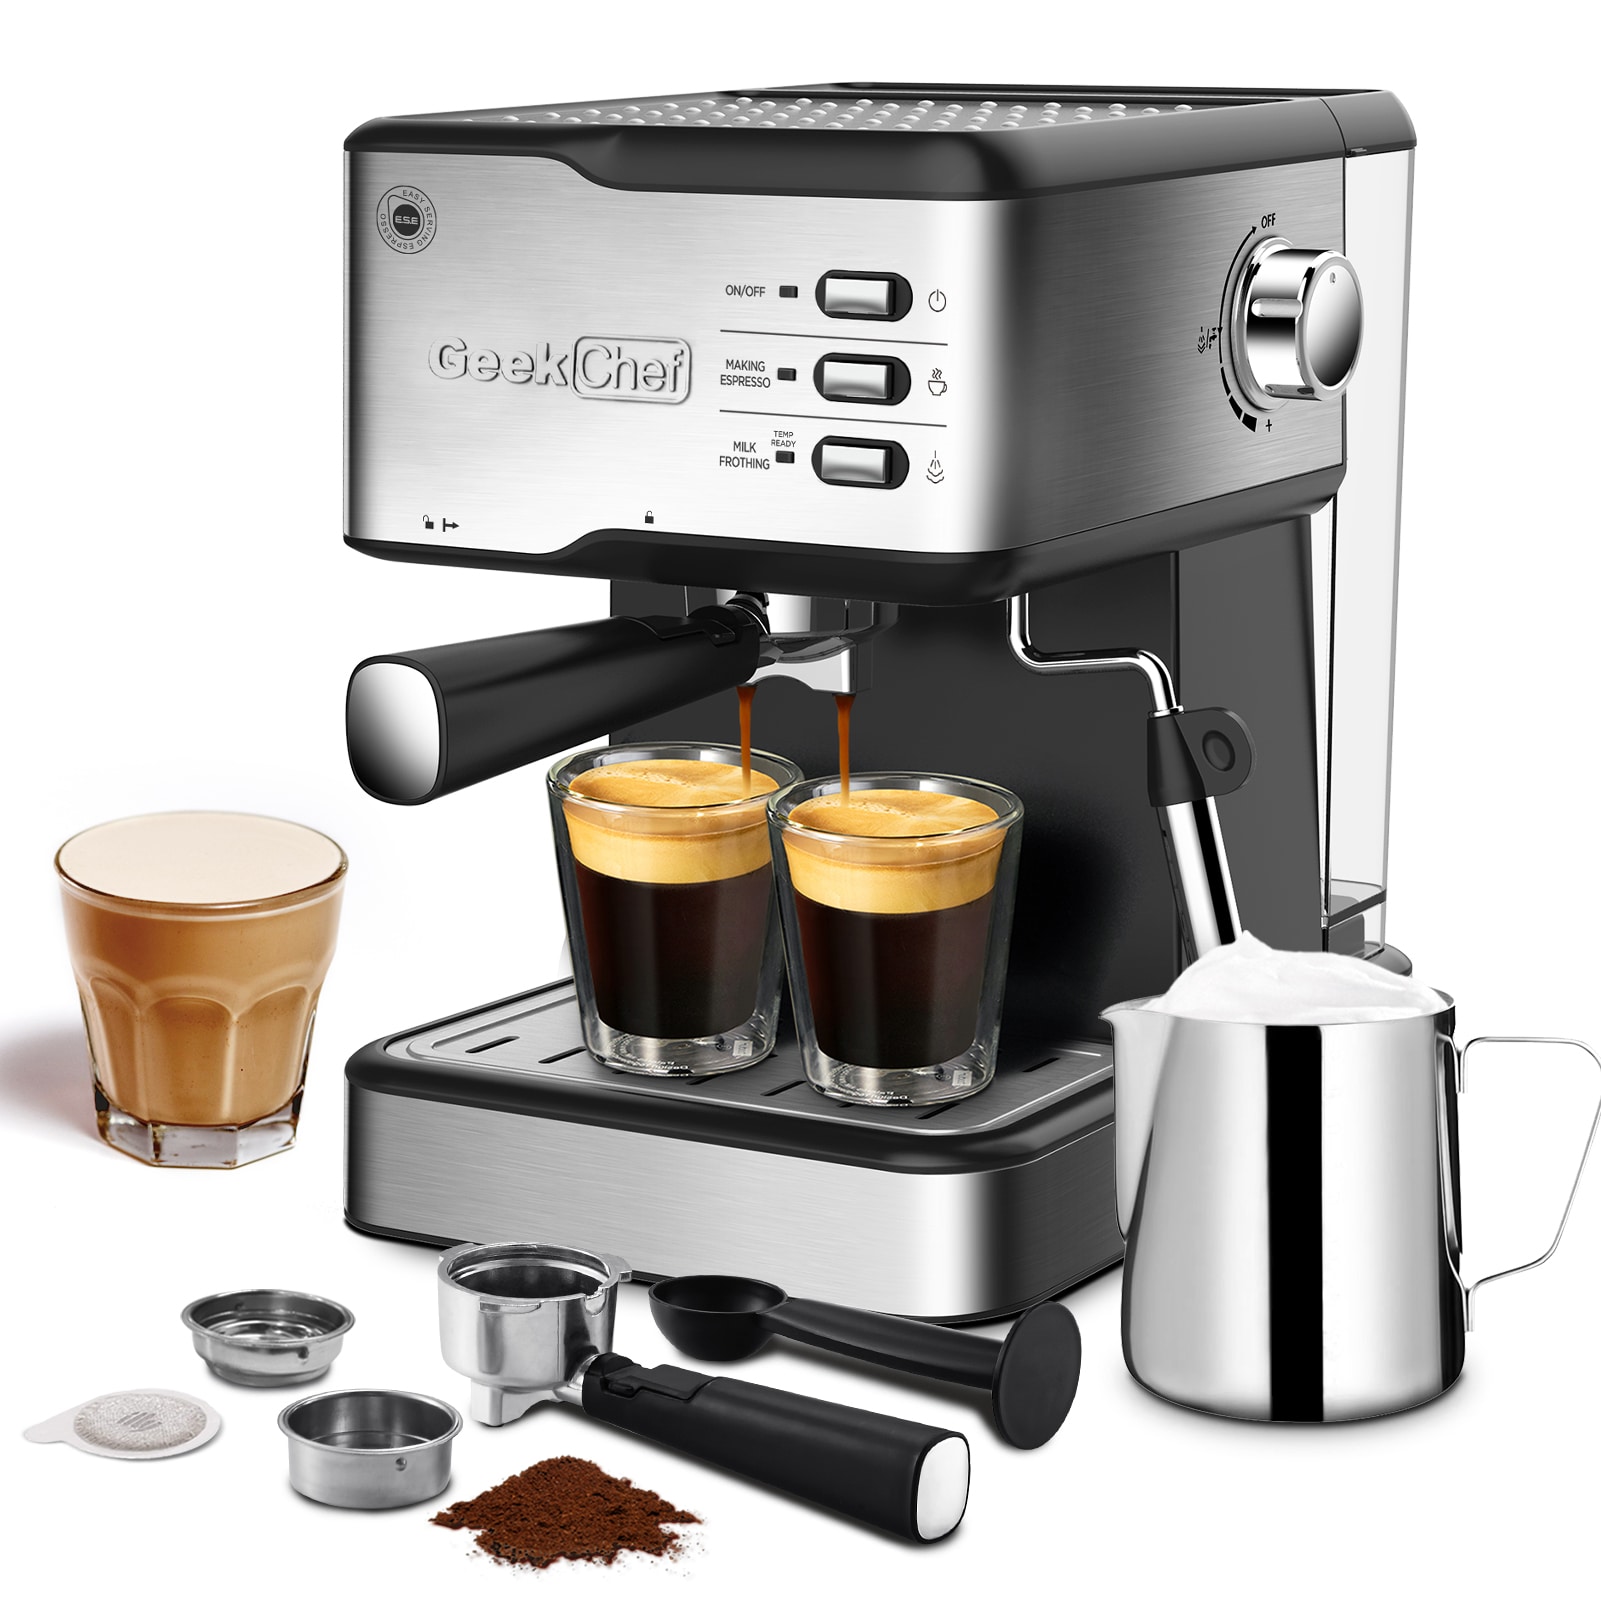 Best coffee maker deal: Get KitchenAid's drip machine for under $90